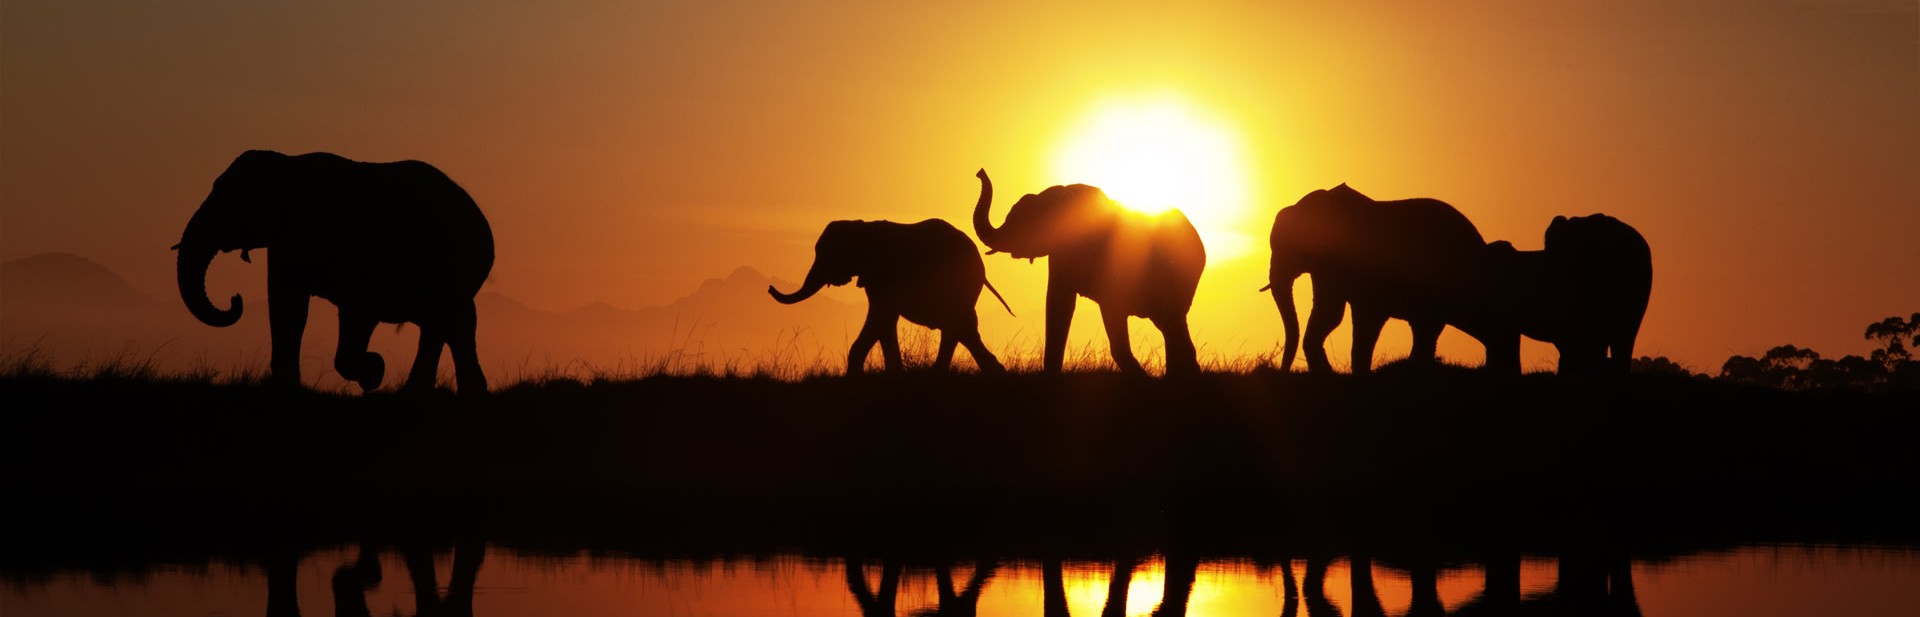 Elephant herd at sunrise in Plett